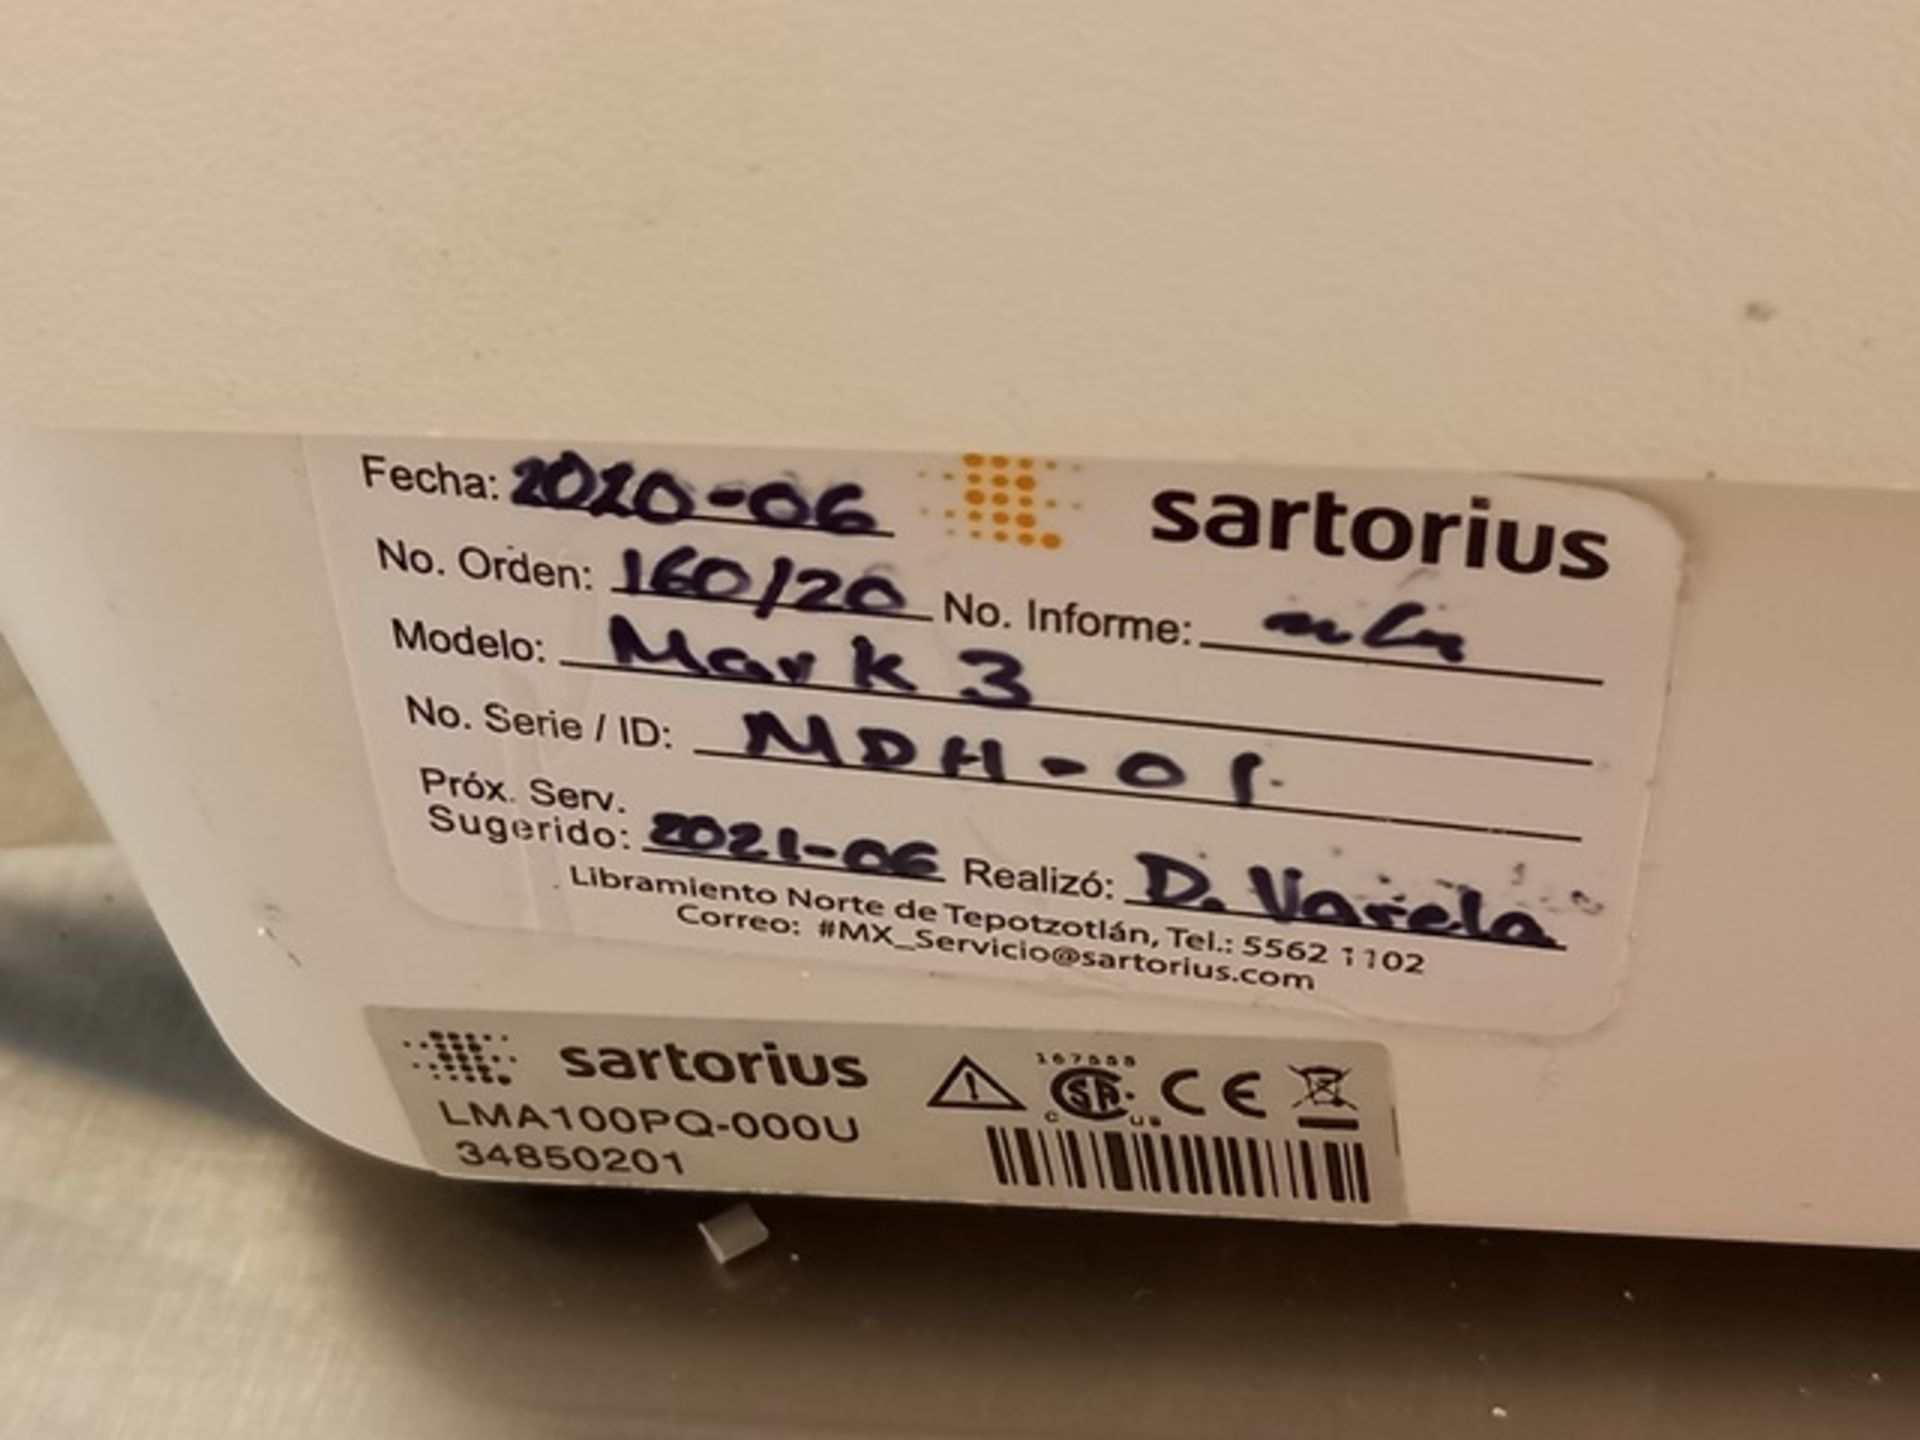 Sartorius LMA100PQ-000U Moisture Analyzer, Serial: 34850201; Year: 2018; with LMA100PA-000U Printer - Image 6 of 15